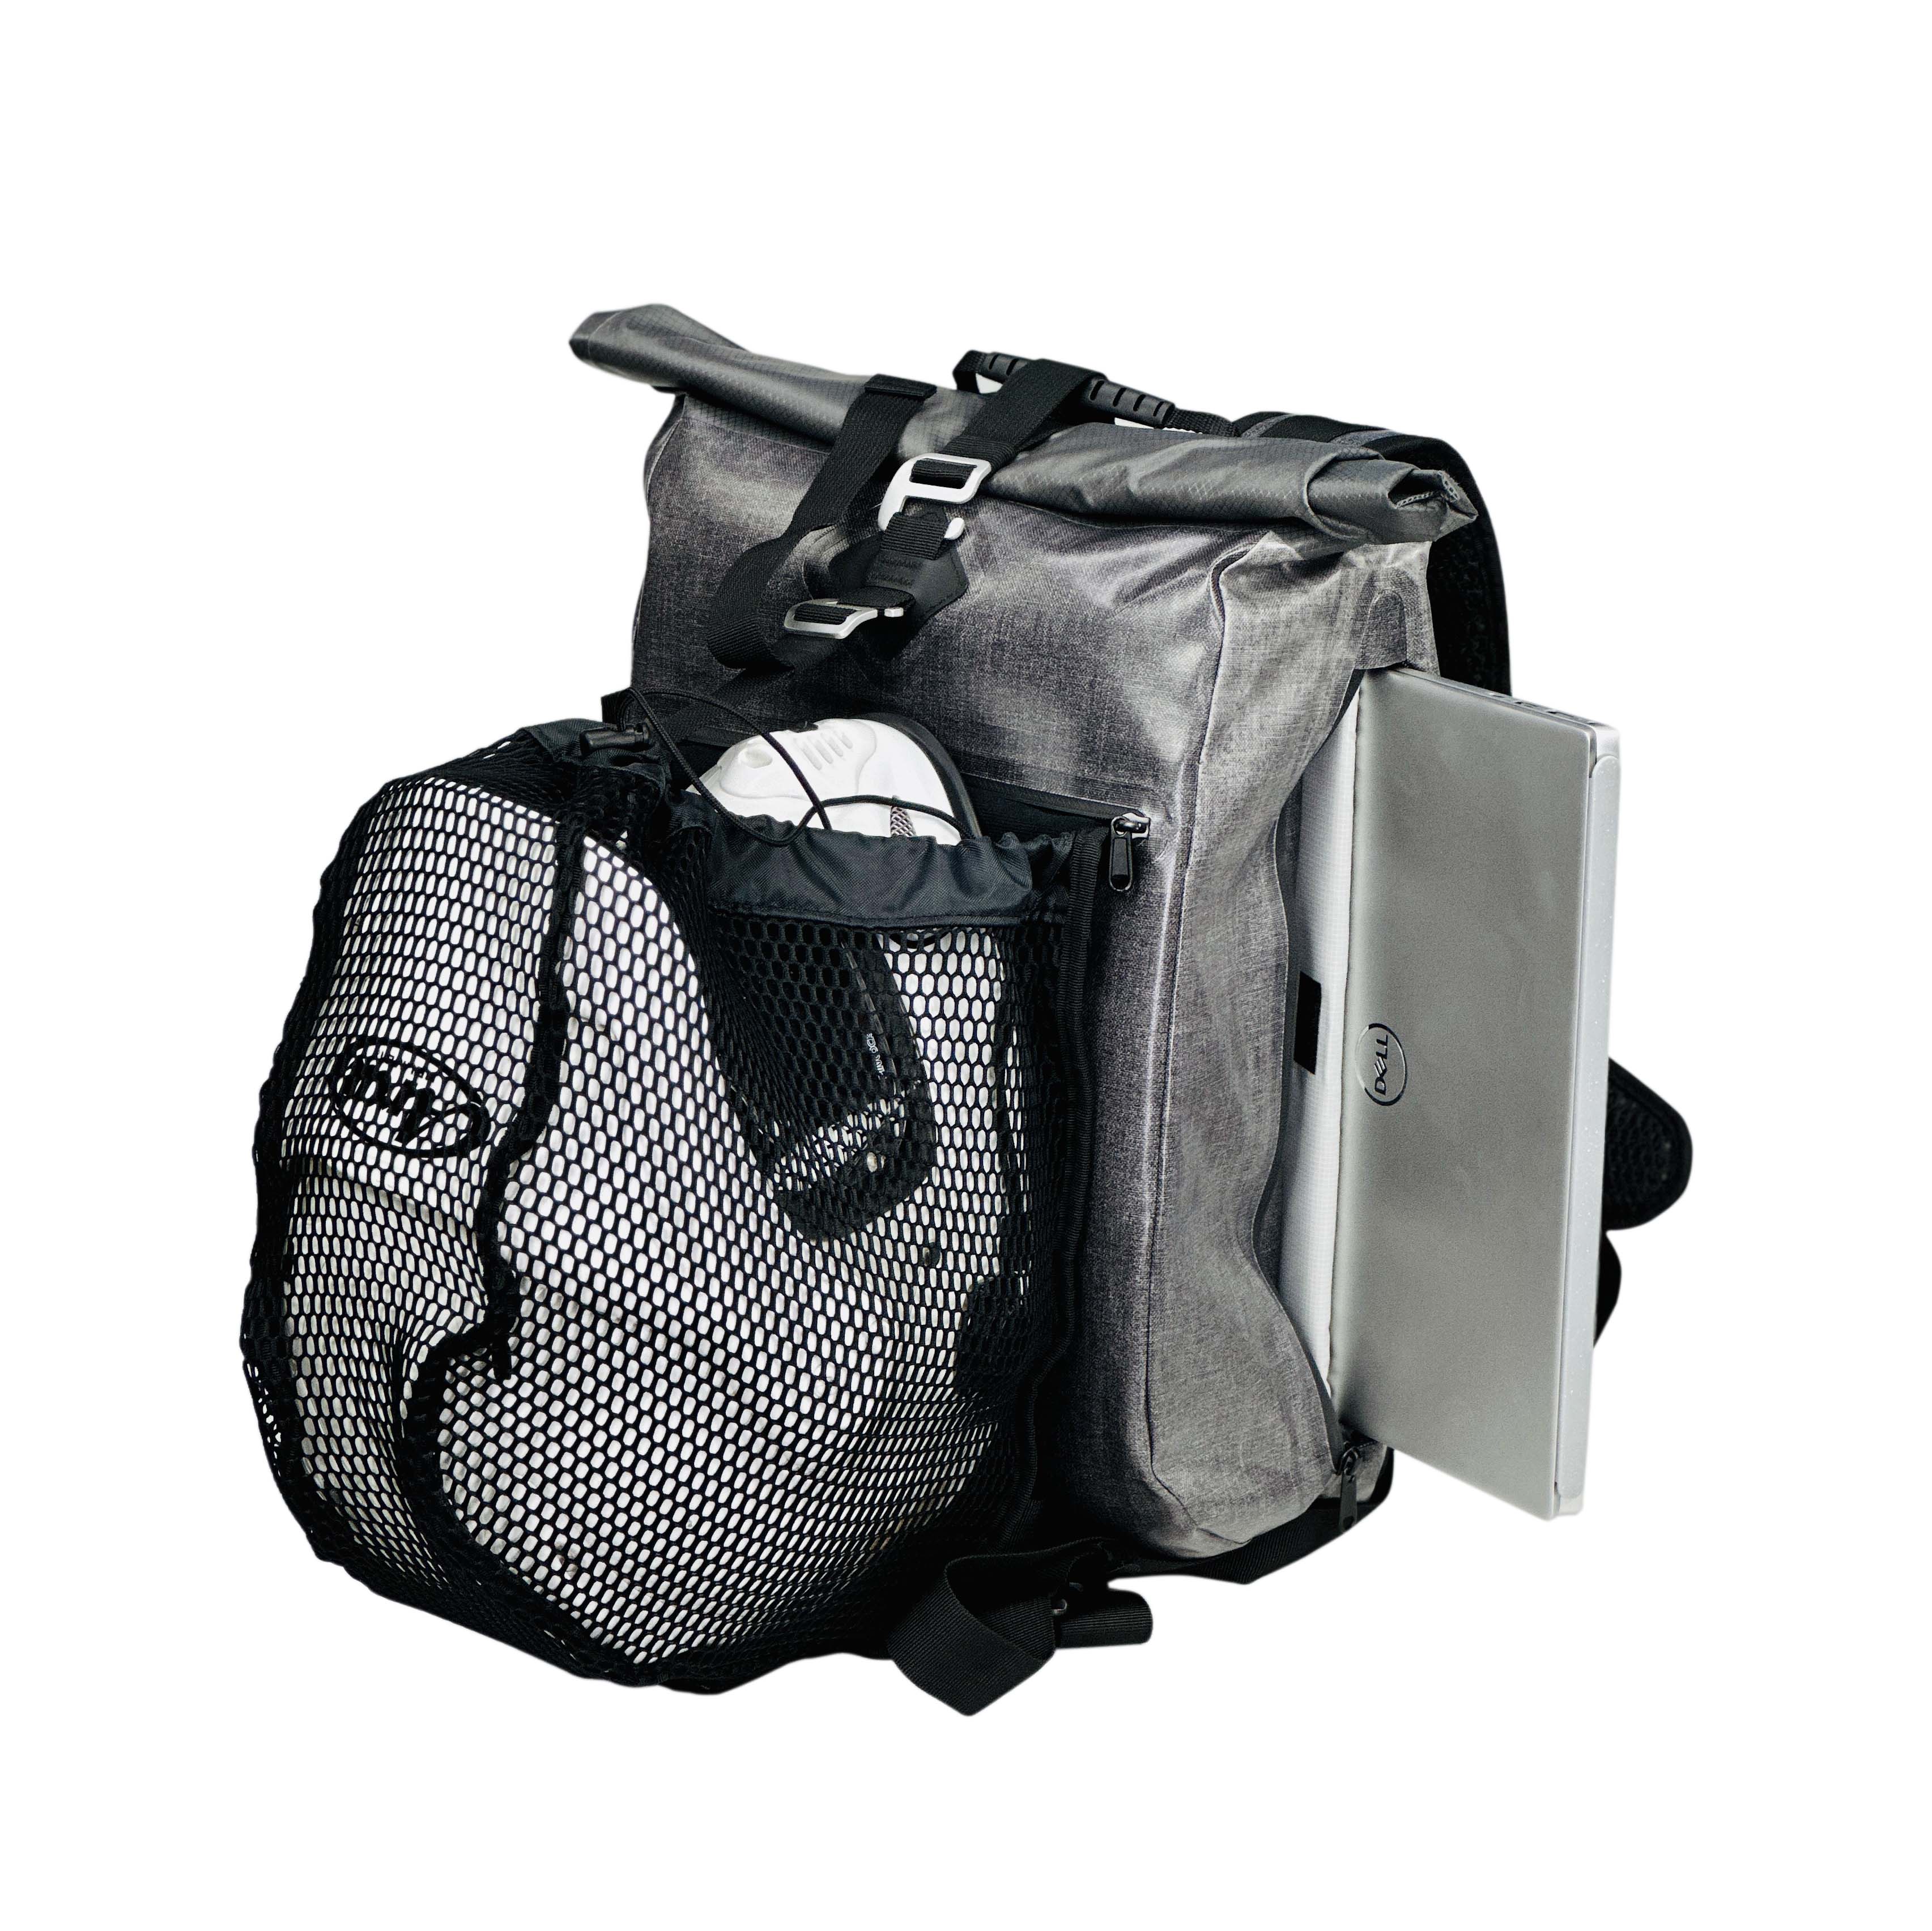 Waterproof 22L  backpack